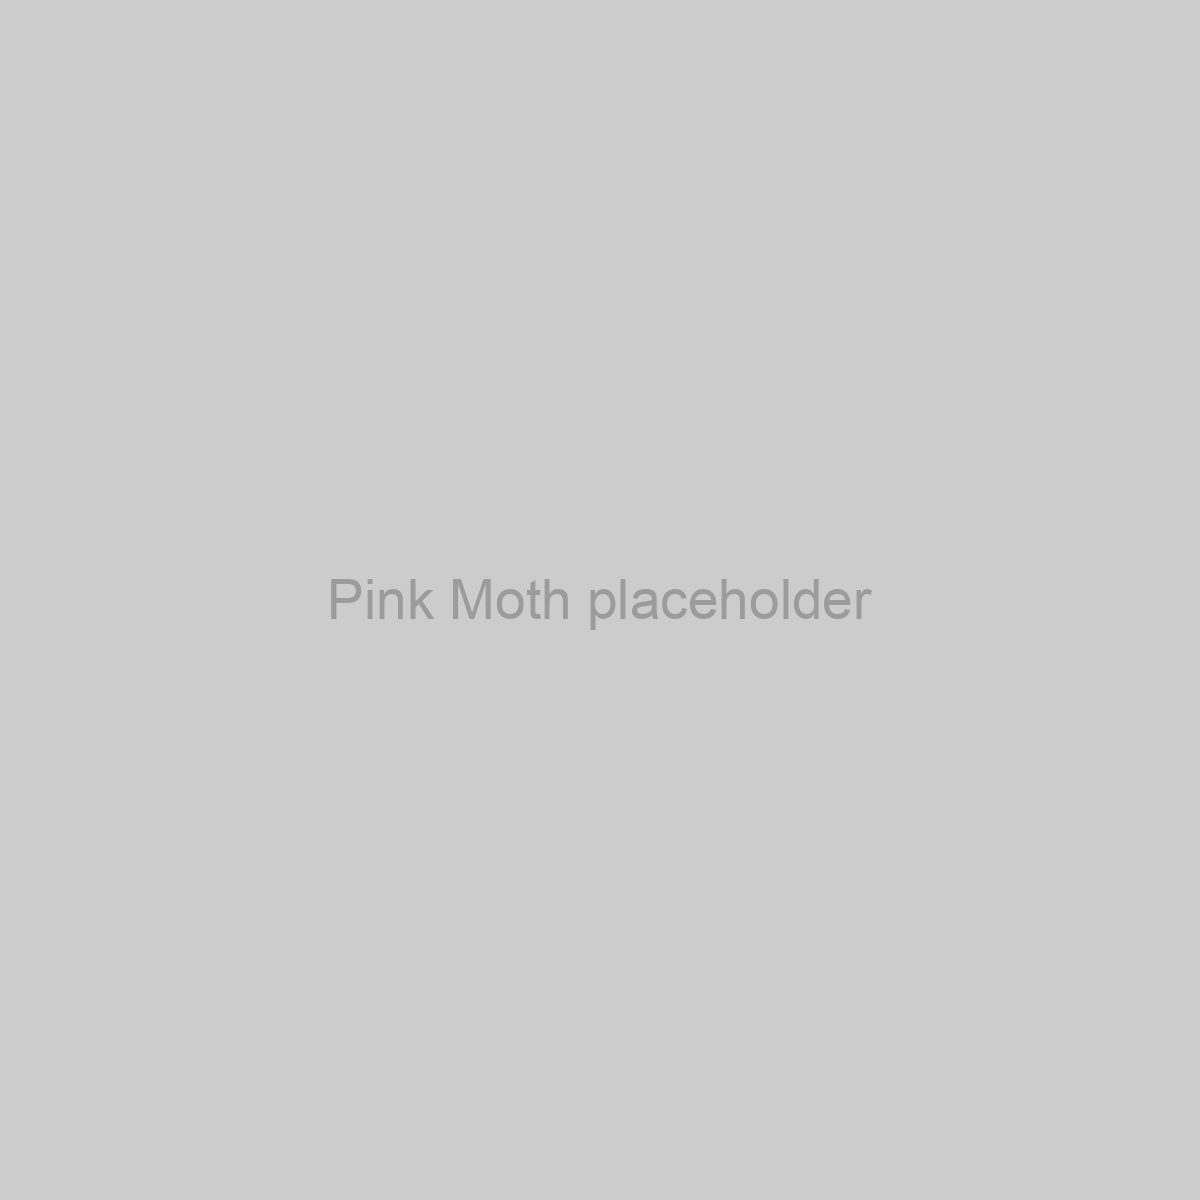 Pink Moth Placeholder Image